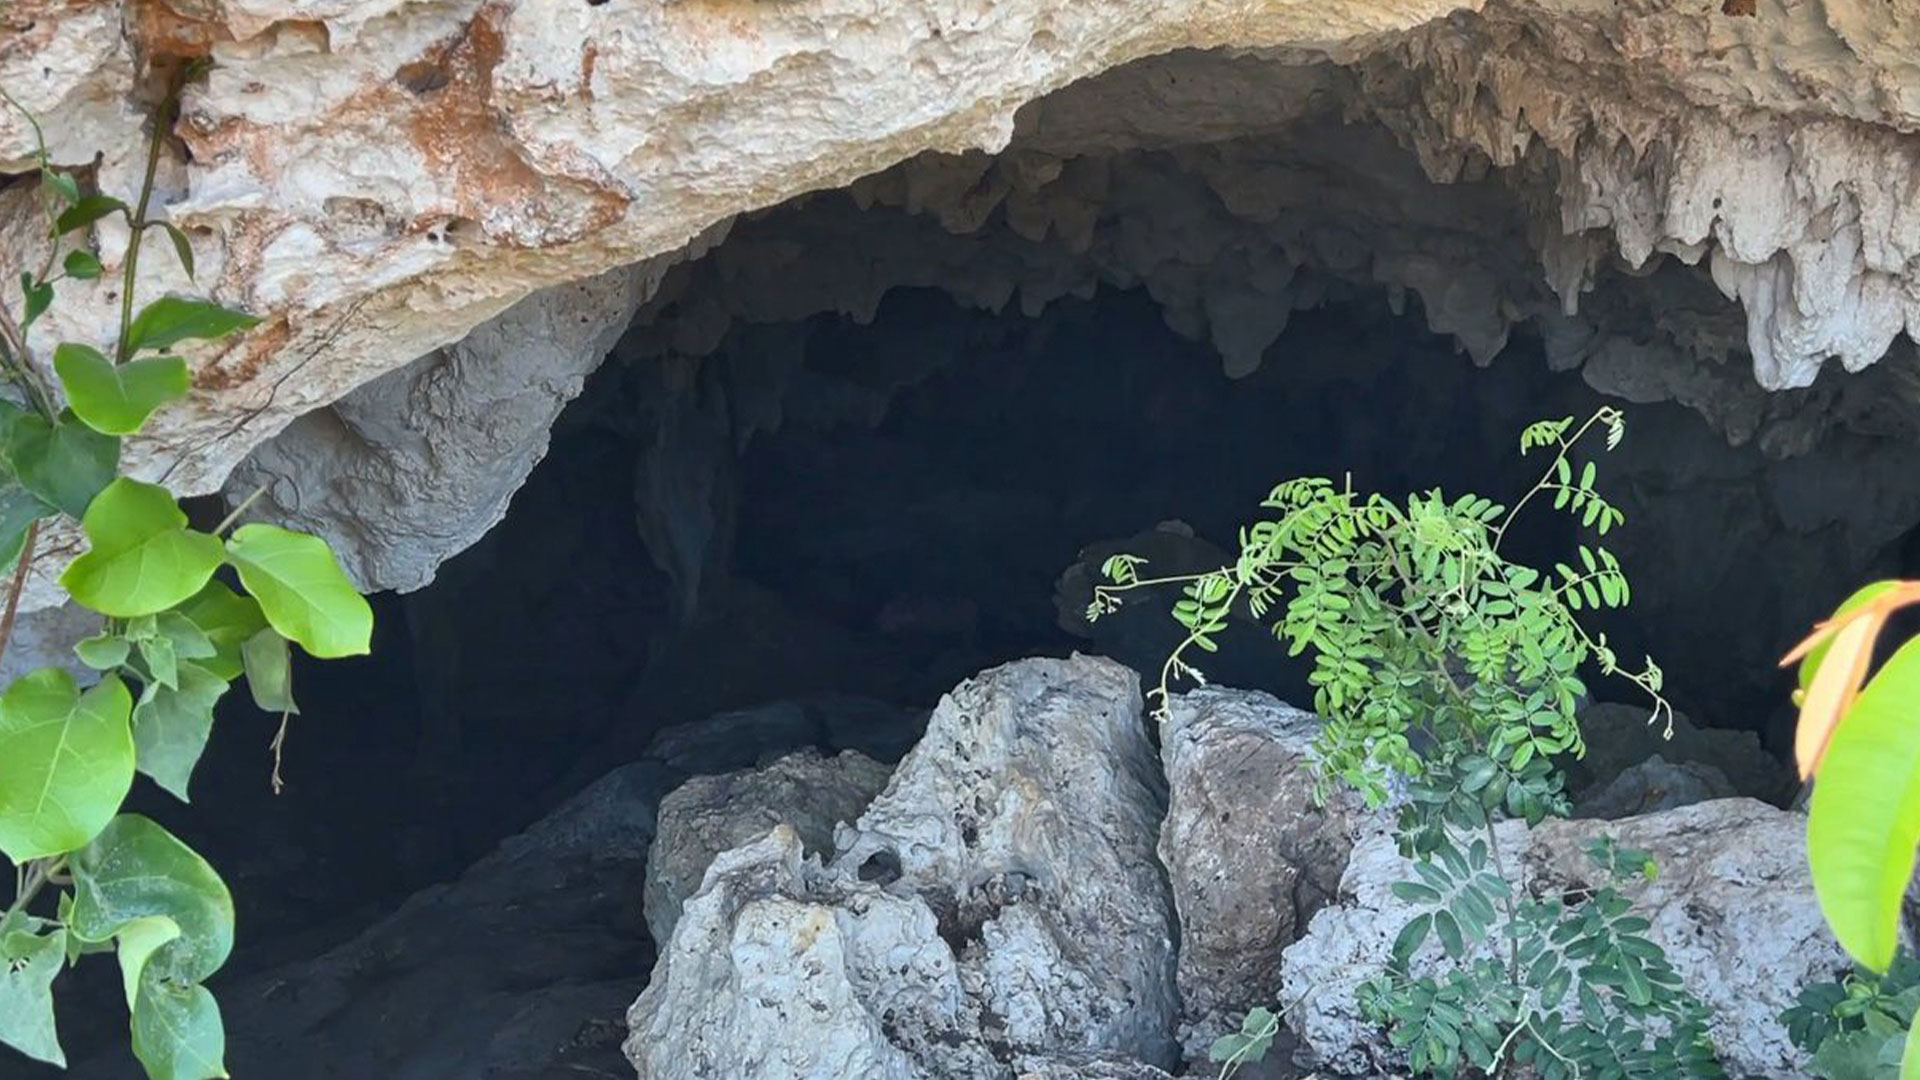 INAH respondió a acusaciones de daño en cueva Dama Blanca por el Tren Maya  - Infobae